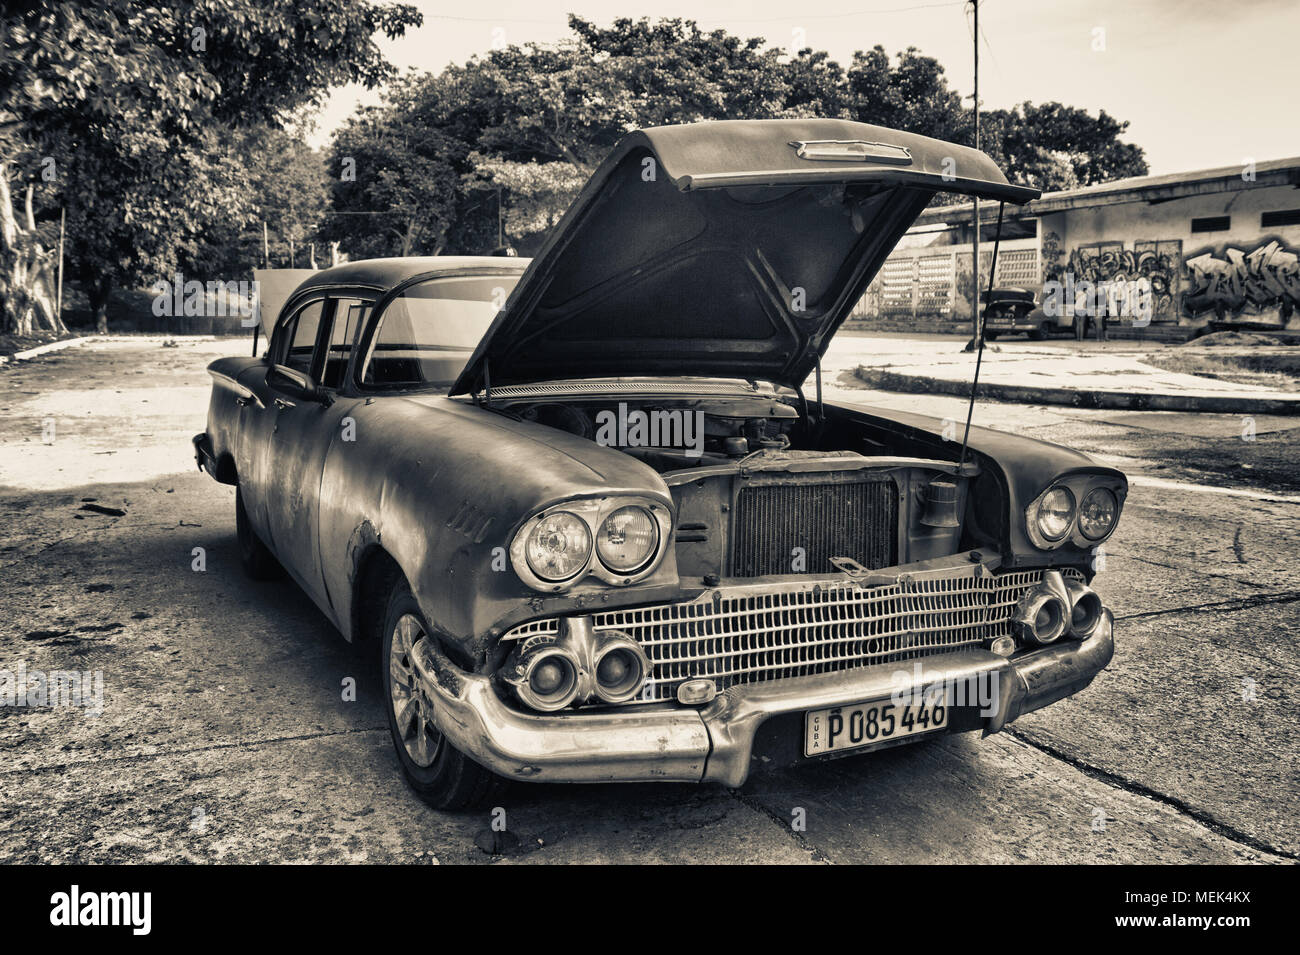 La HAVANE, CUBA- Dec 12, 2016 : noir et blanc ton de vieille voiture américaine garée moteur ploblem pentecôte Banque D'Images